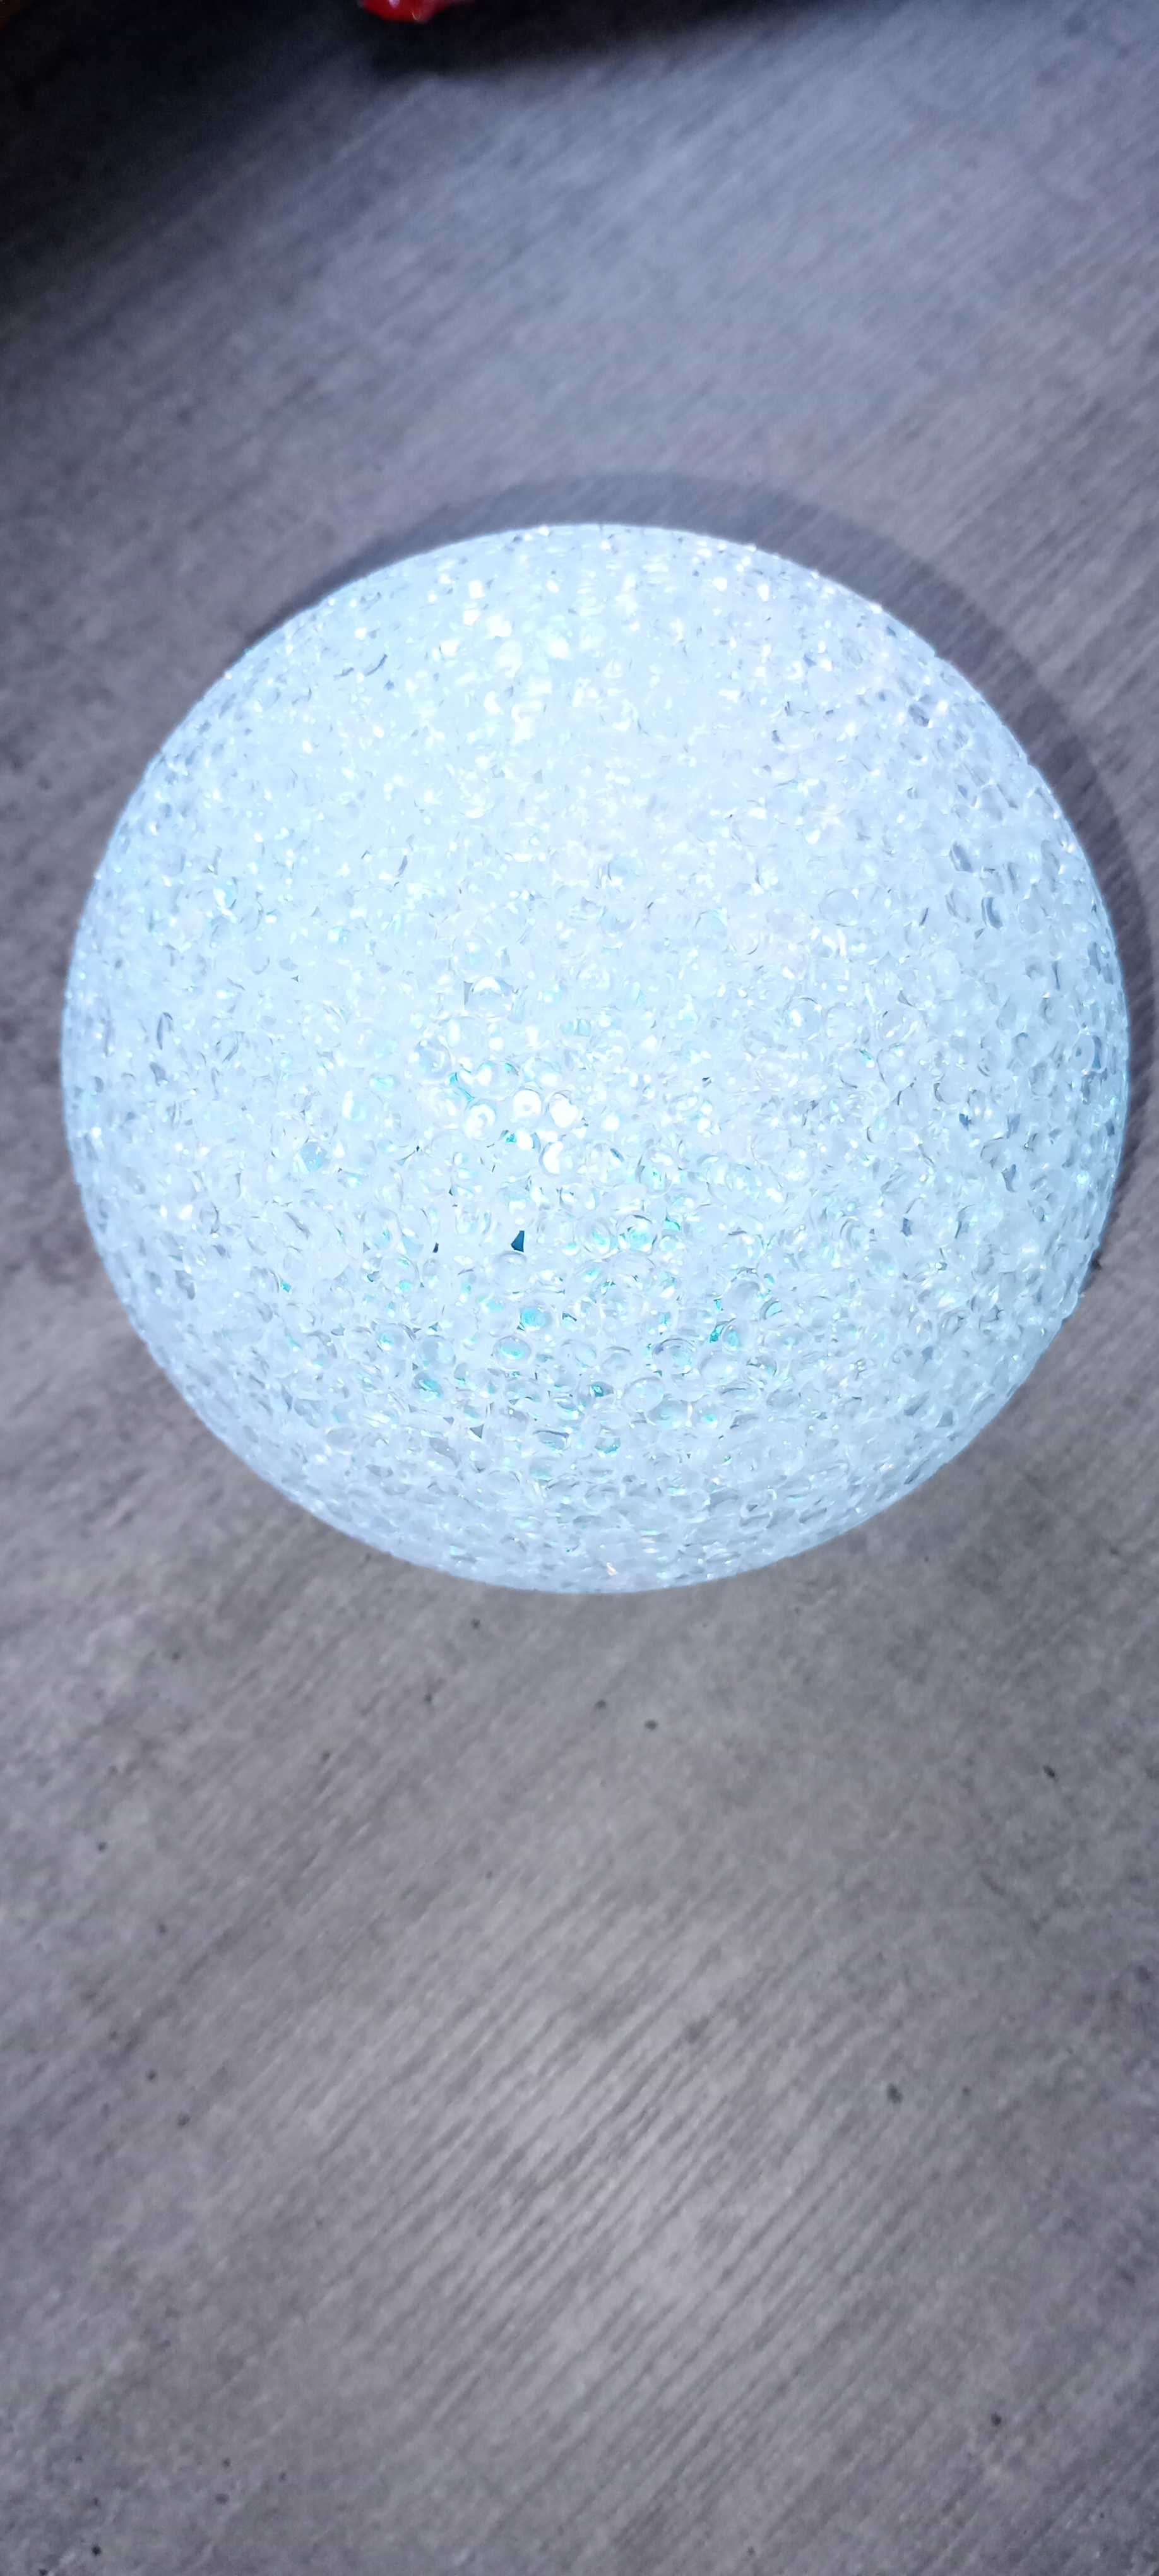 Lampa w kształcie kuli